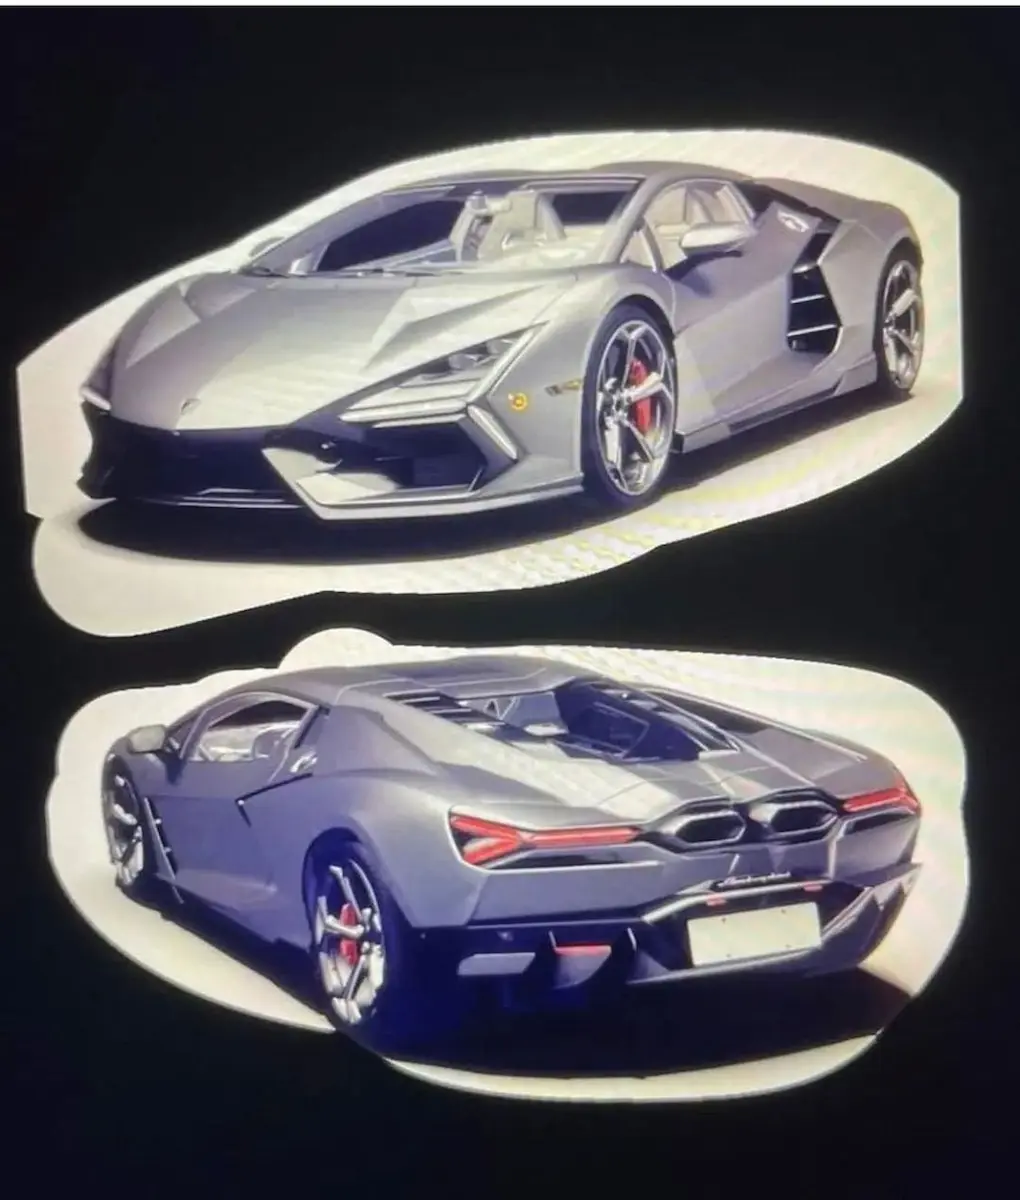 Lamborghini Aventador Successor Leaked